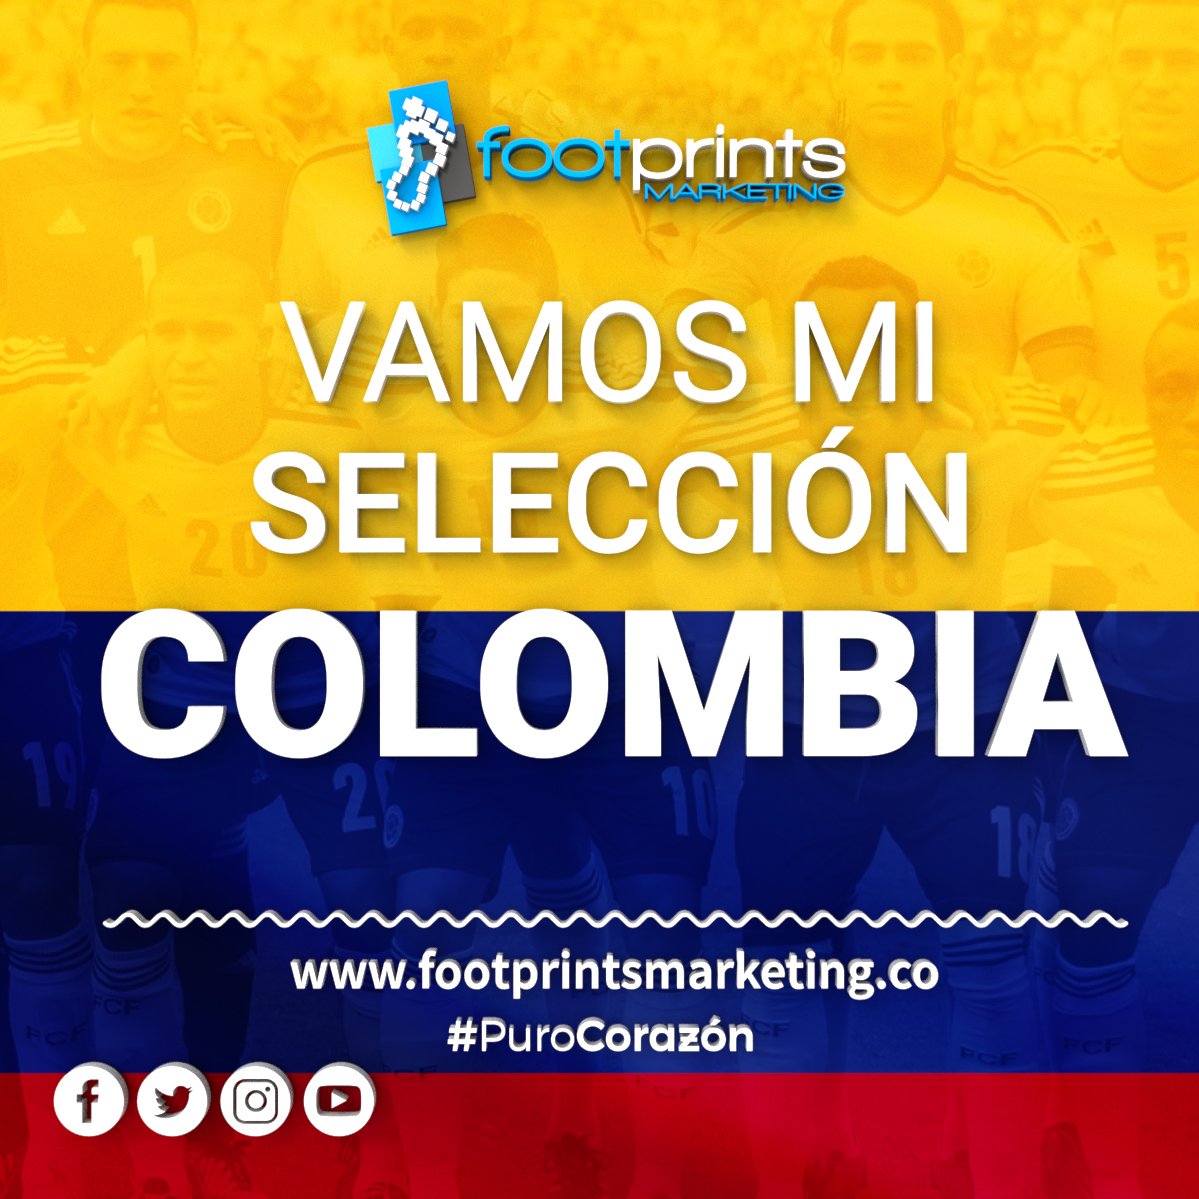 Siempre apoyando a nuestra selección #FootprintsMarketing #FootSelección #PuroCorazón #SelecciónColombia